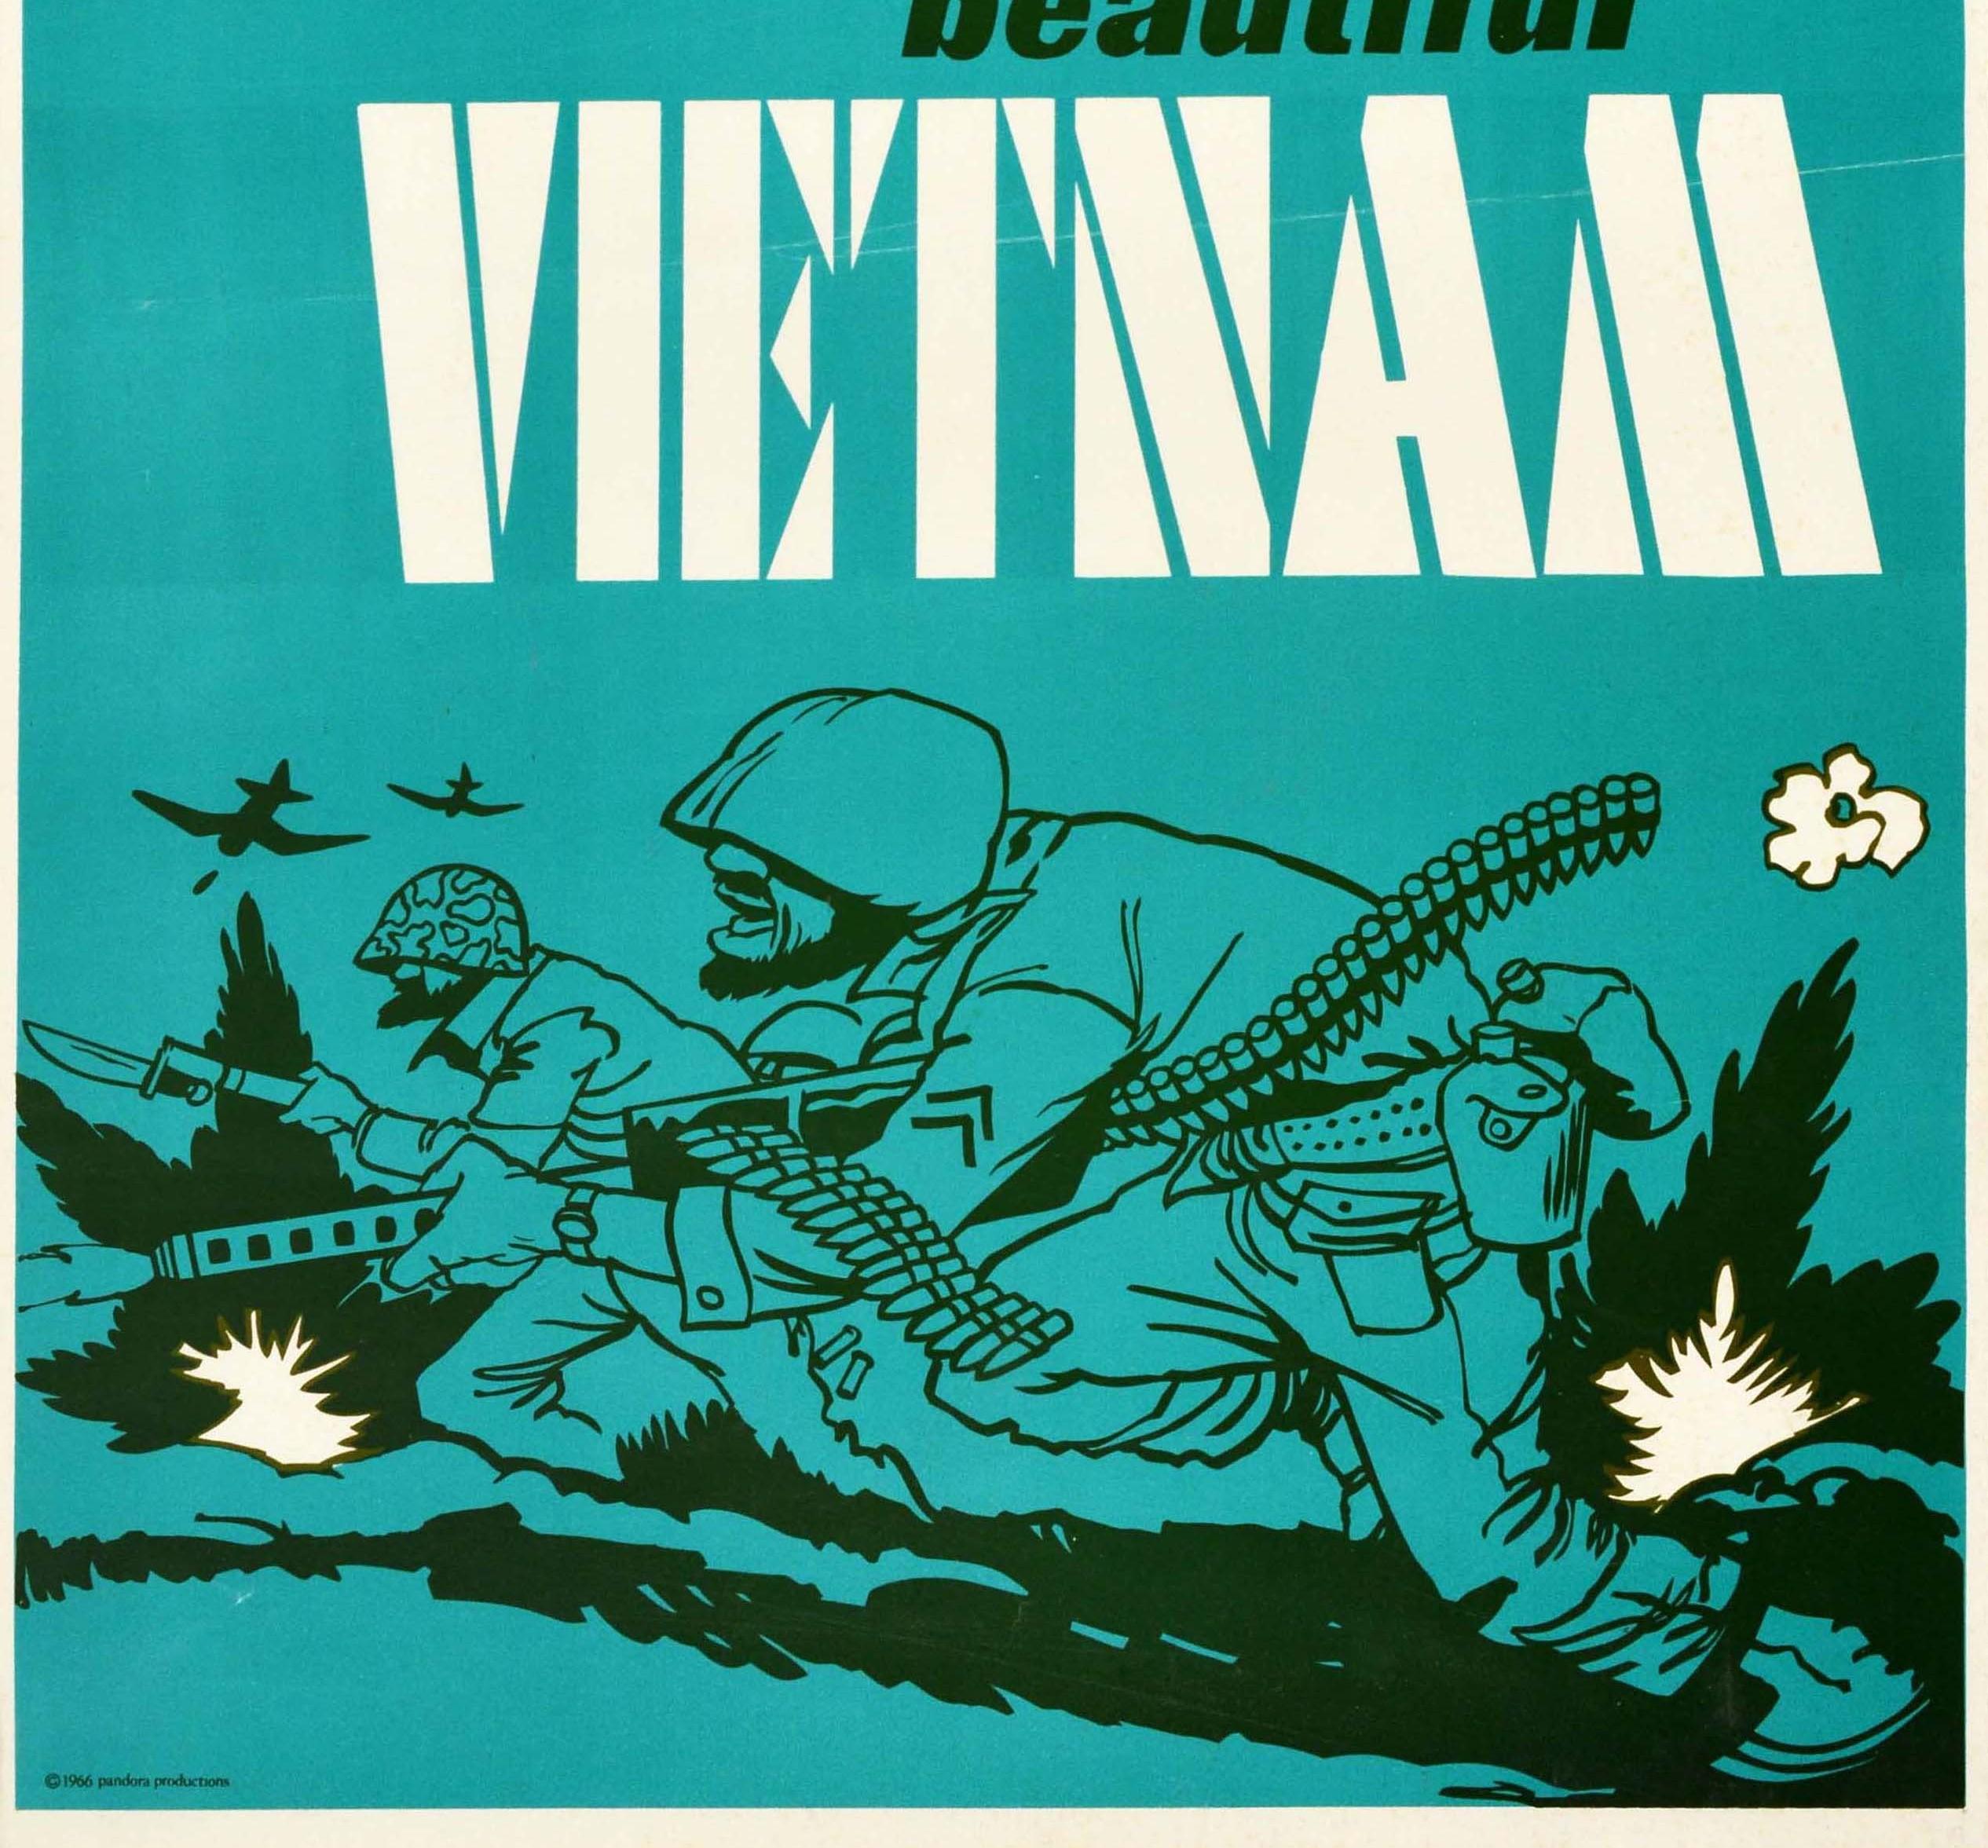 vietnam war recruitment posters